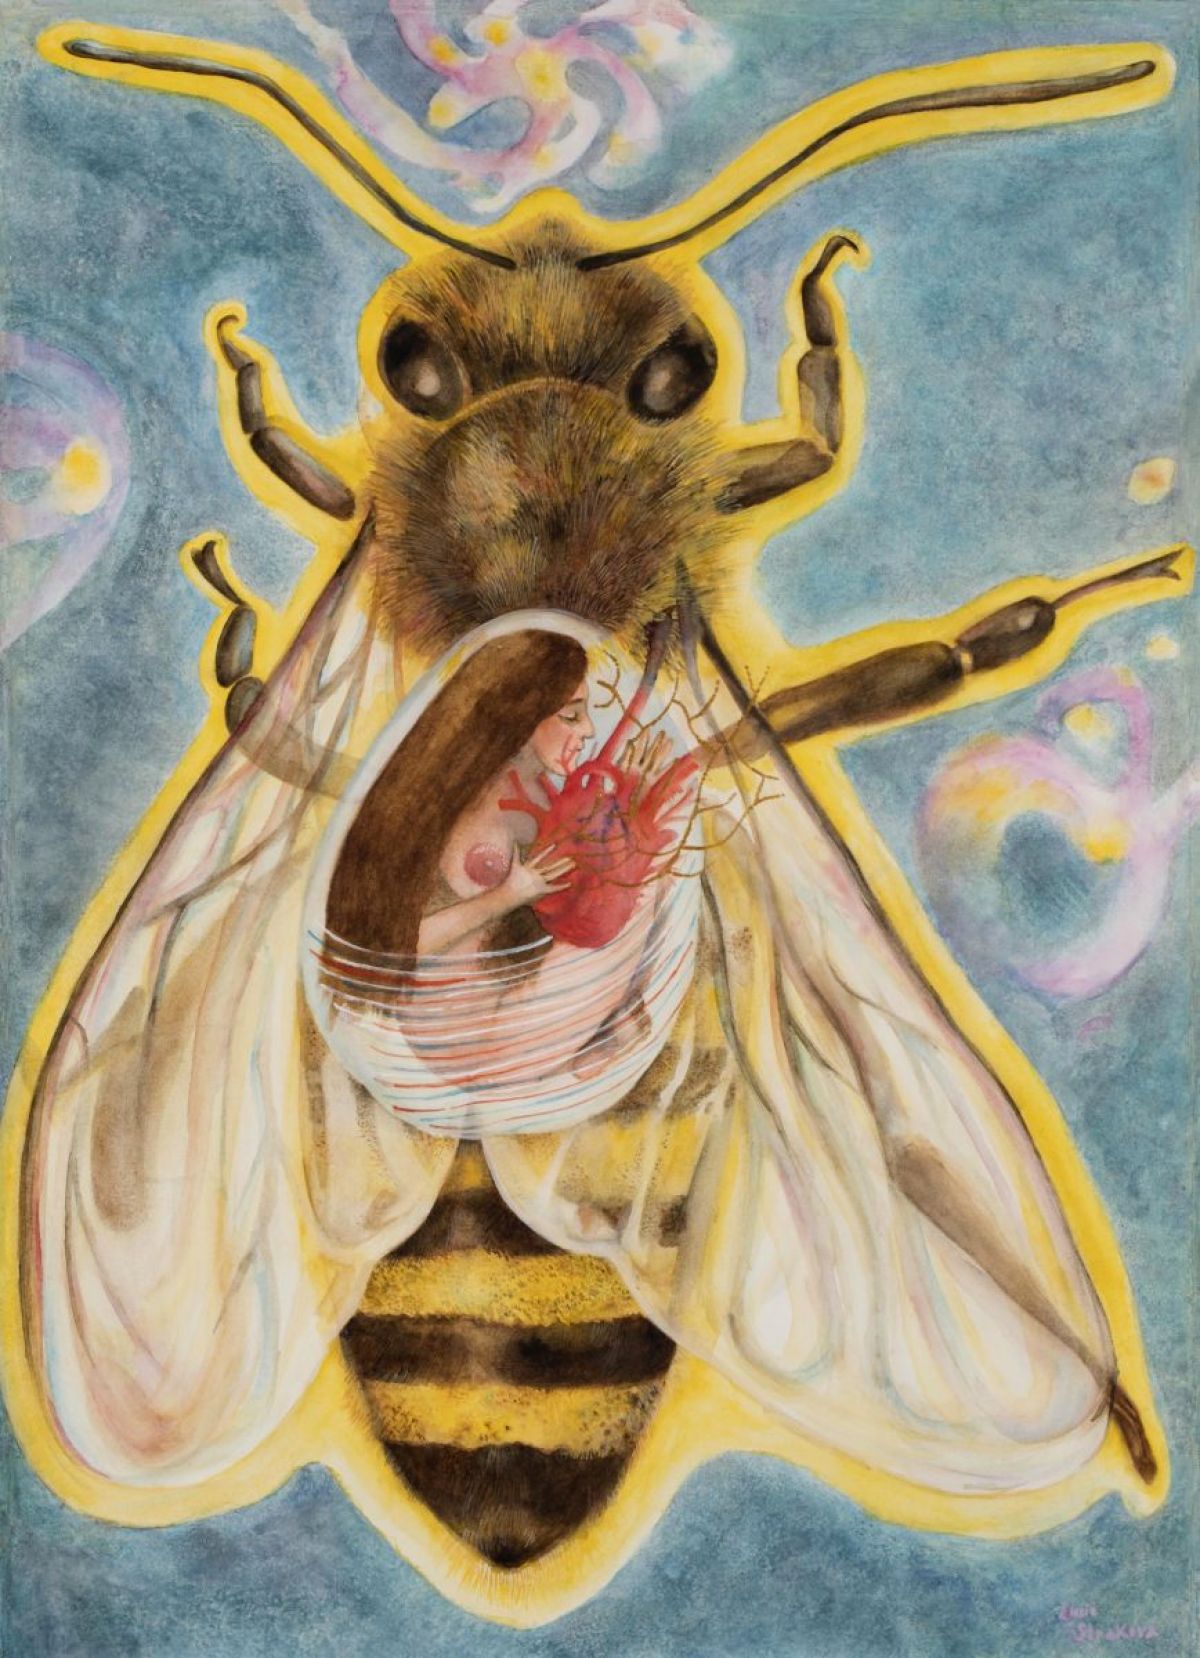 Včela, 49x68 cm, rok 2017 Brahmari Devi je indická bohyně, jejíž hindské jméno Brahmari znamená Včela. Říká se o ní, že svůj domov má v srdeční čakře, odkud vydává bzučivý včelí zvuk. Bzučení včel přináší esenciální zvuk univerza. Včelí bohyně připomíná, že skrze milující spolupráci, zaměření a vytrvalou práci můžeme vytvářet sladký nektar života..